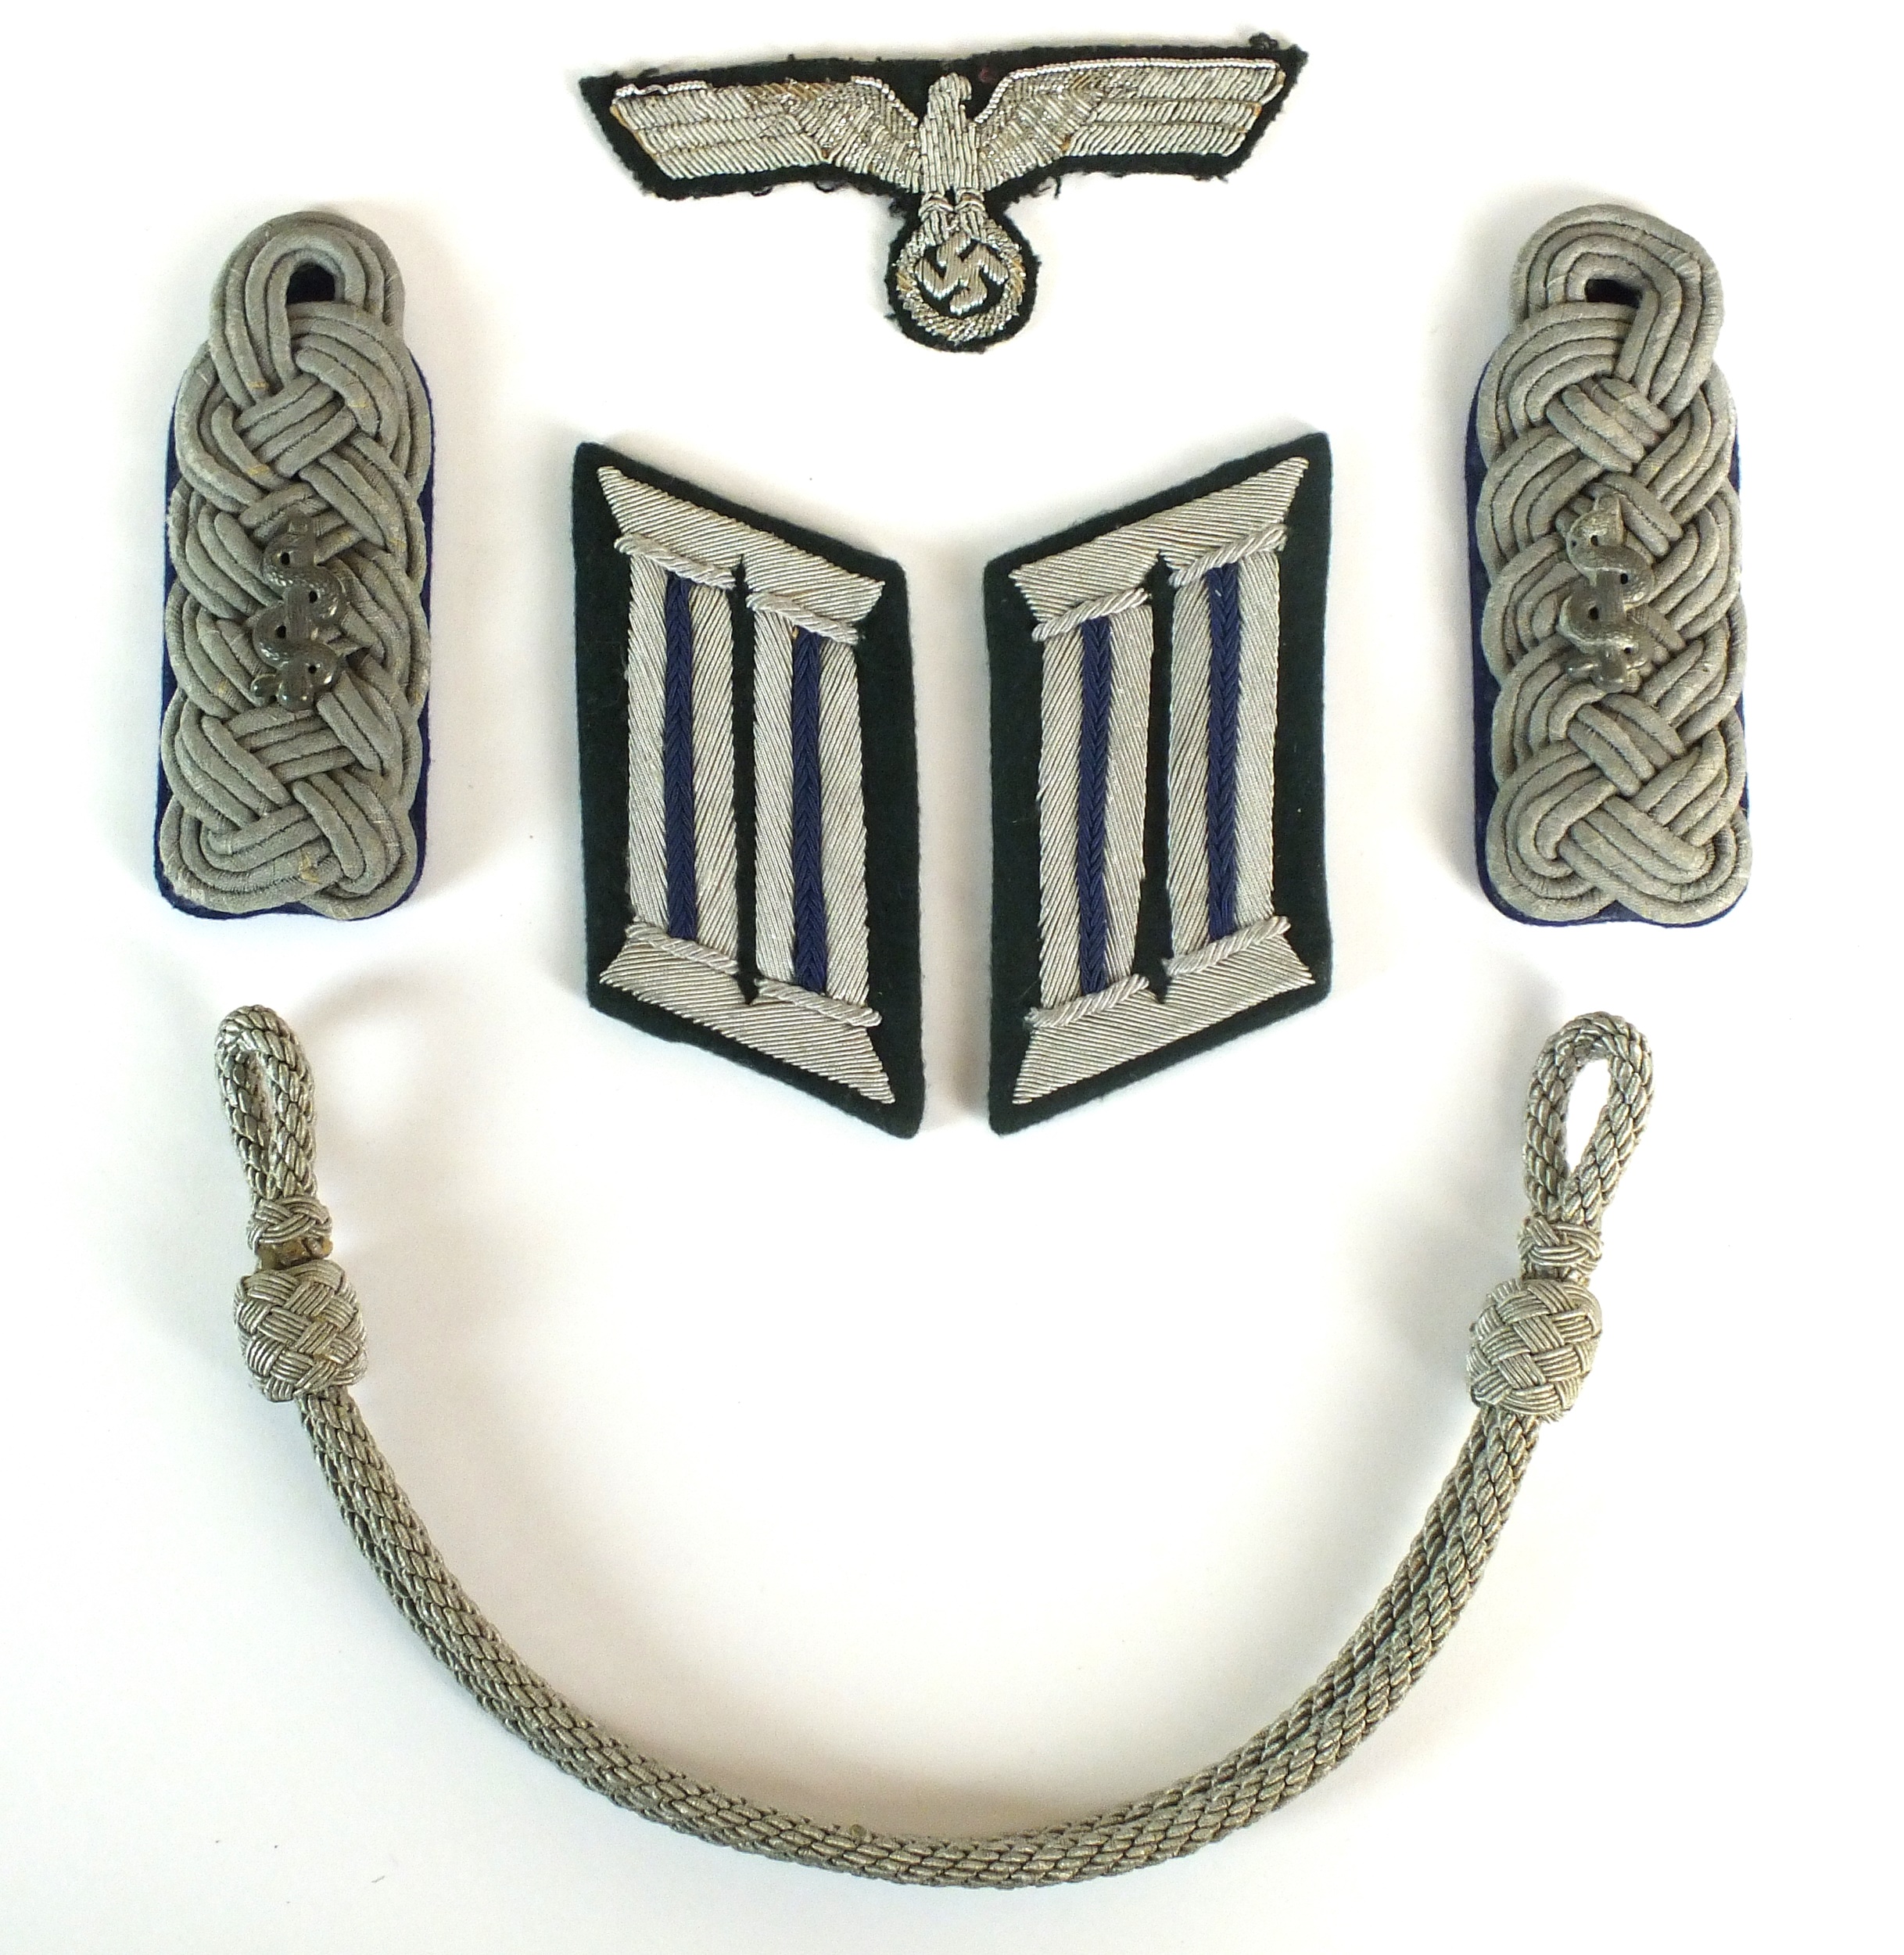 WW2 German Army Medical insignia